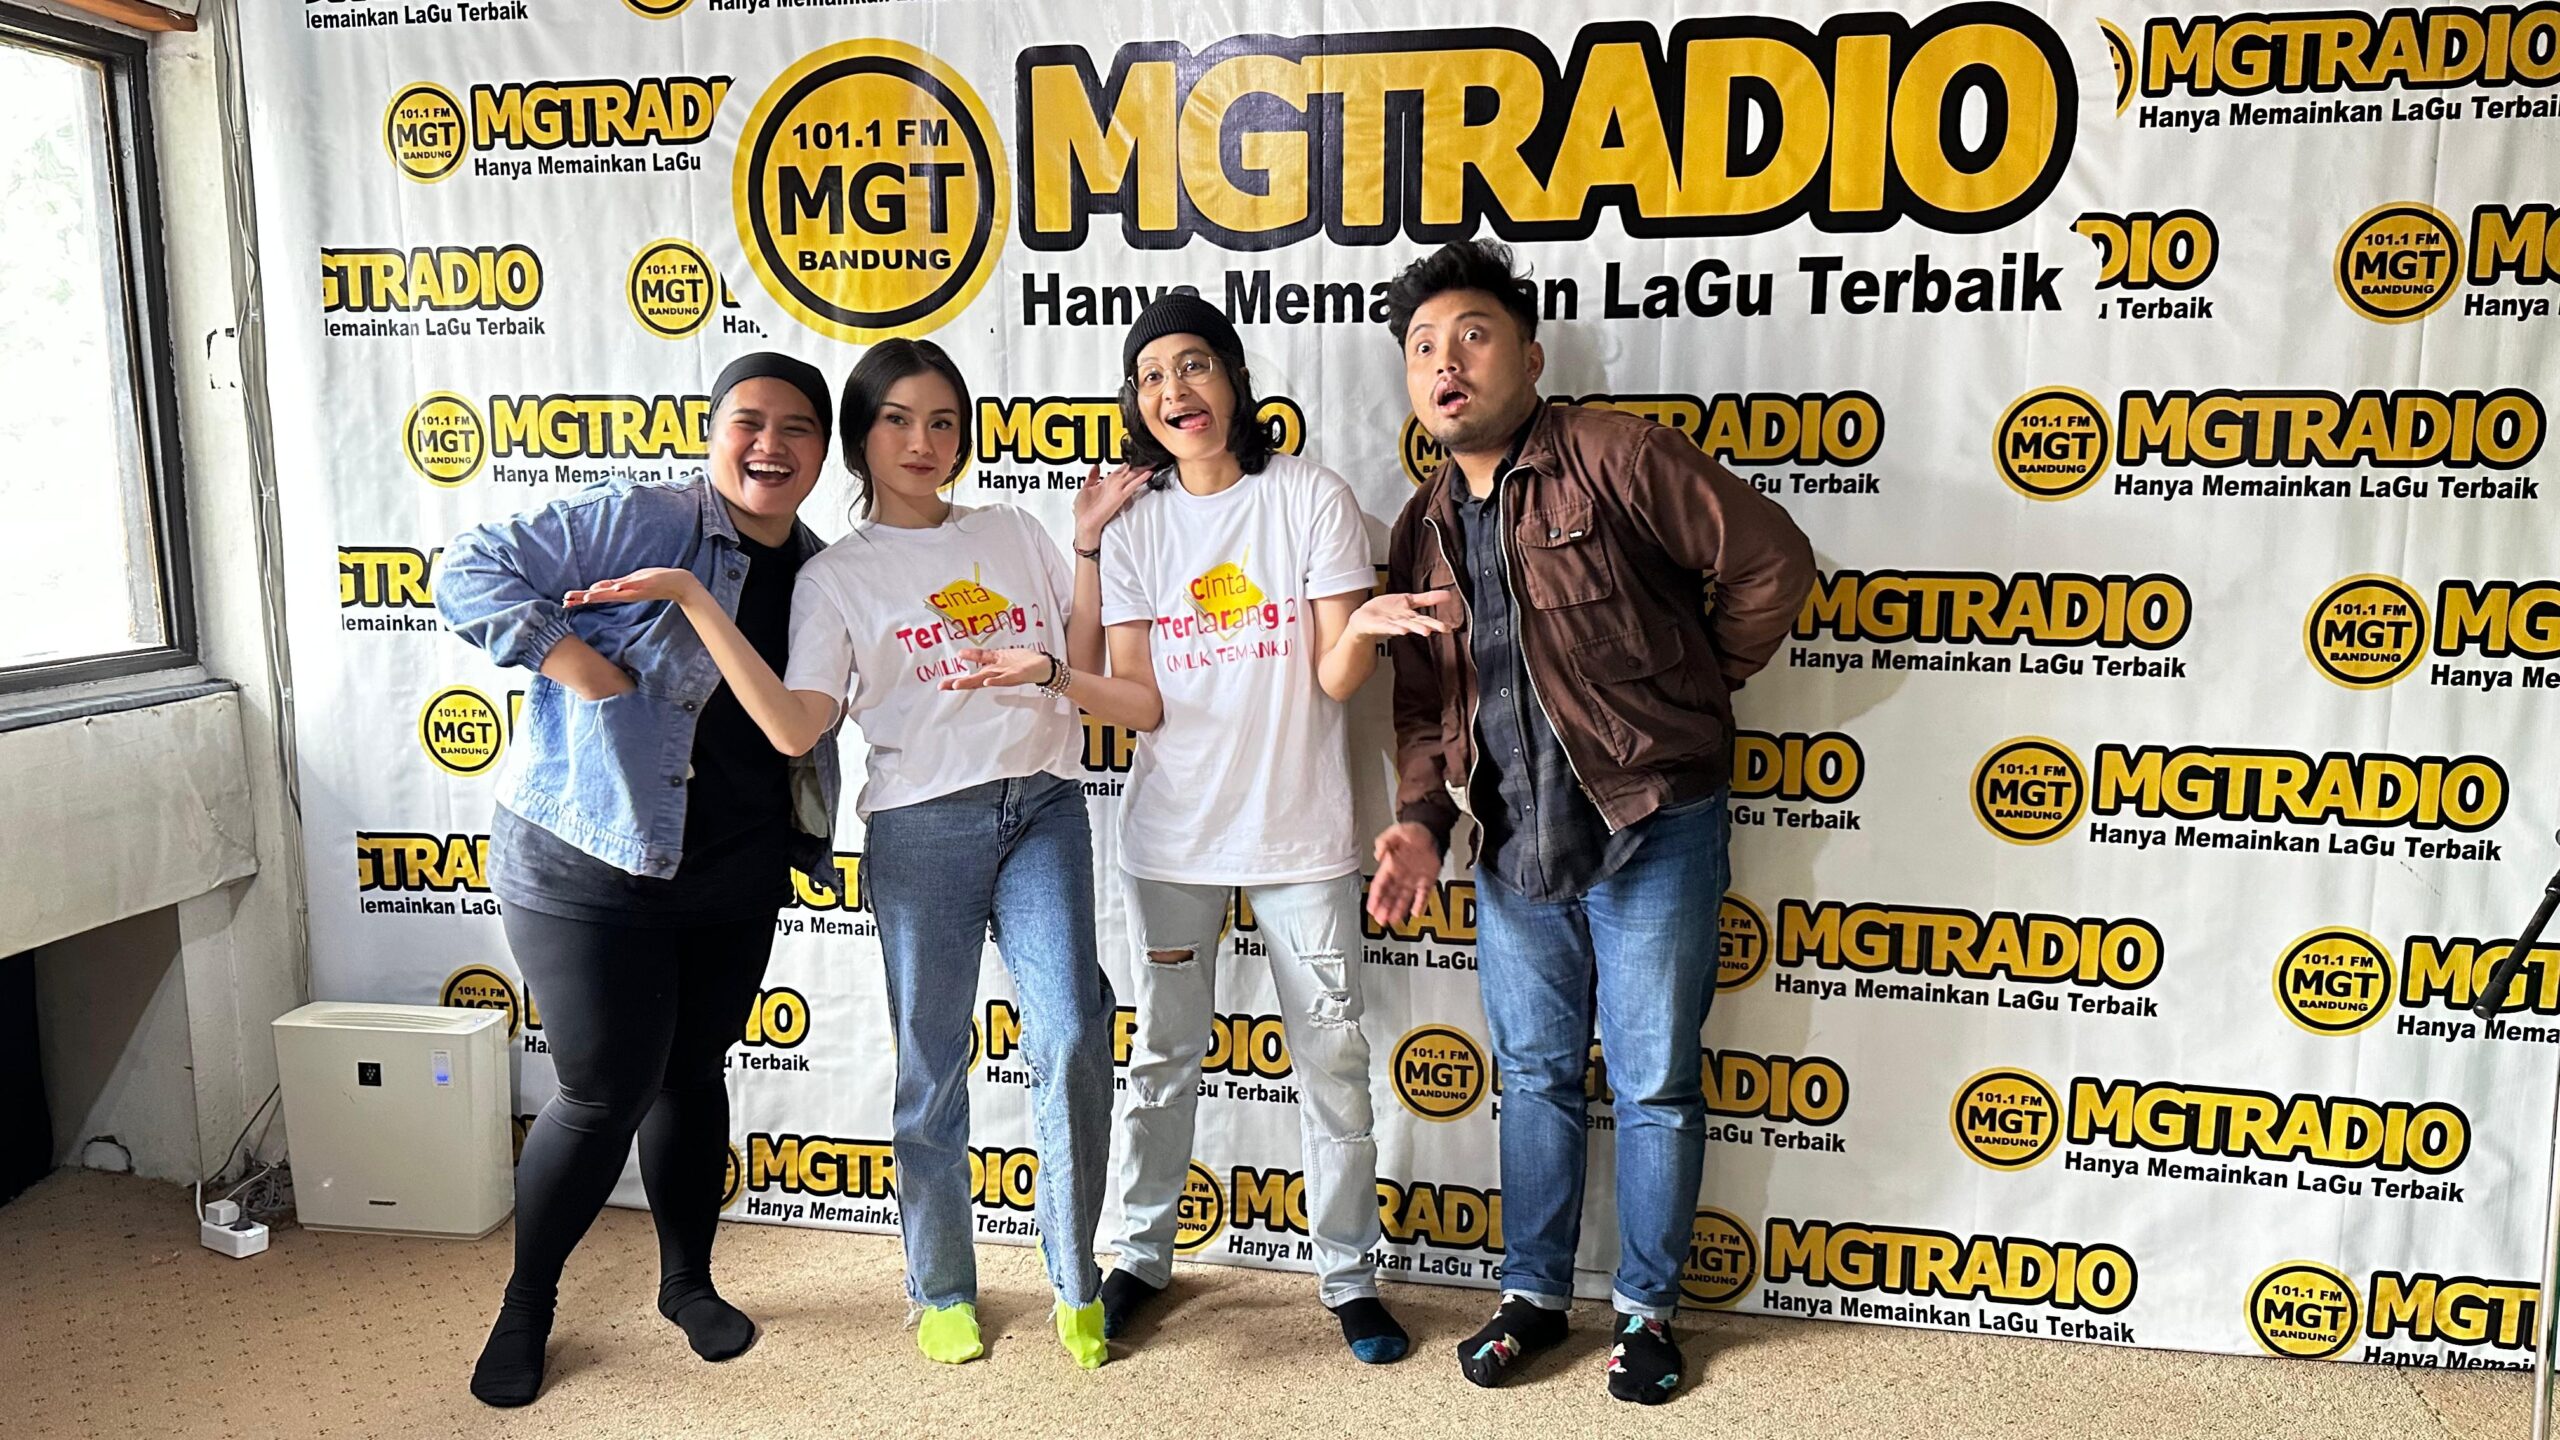 The Virgin Visit MGTRADIO 101.FM Bandung